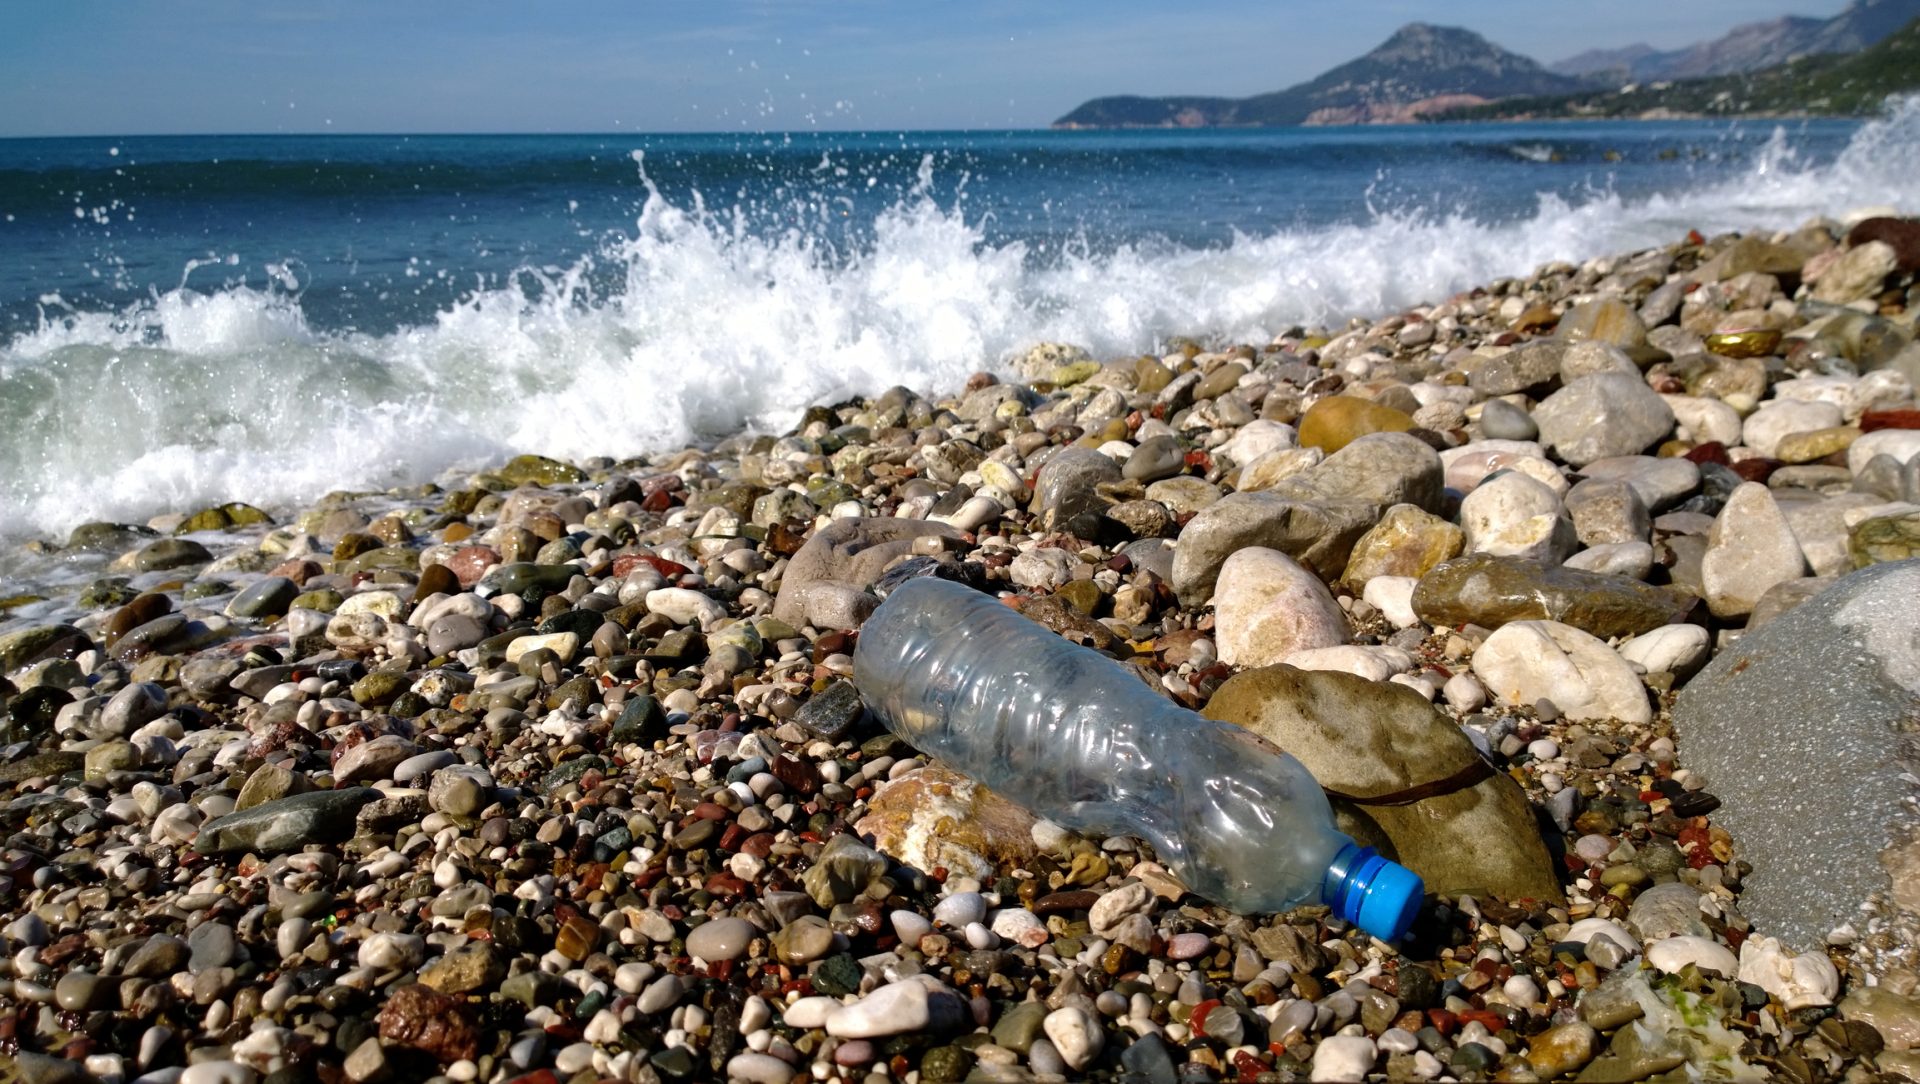 “O mais tardar em 2021, Portugal estará livre de palhinhas e garrafas de plástico&#8221;